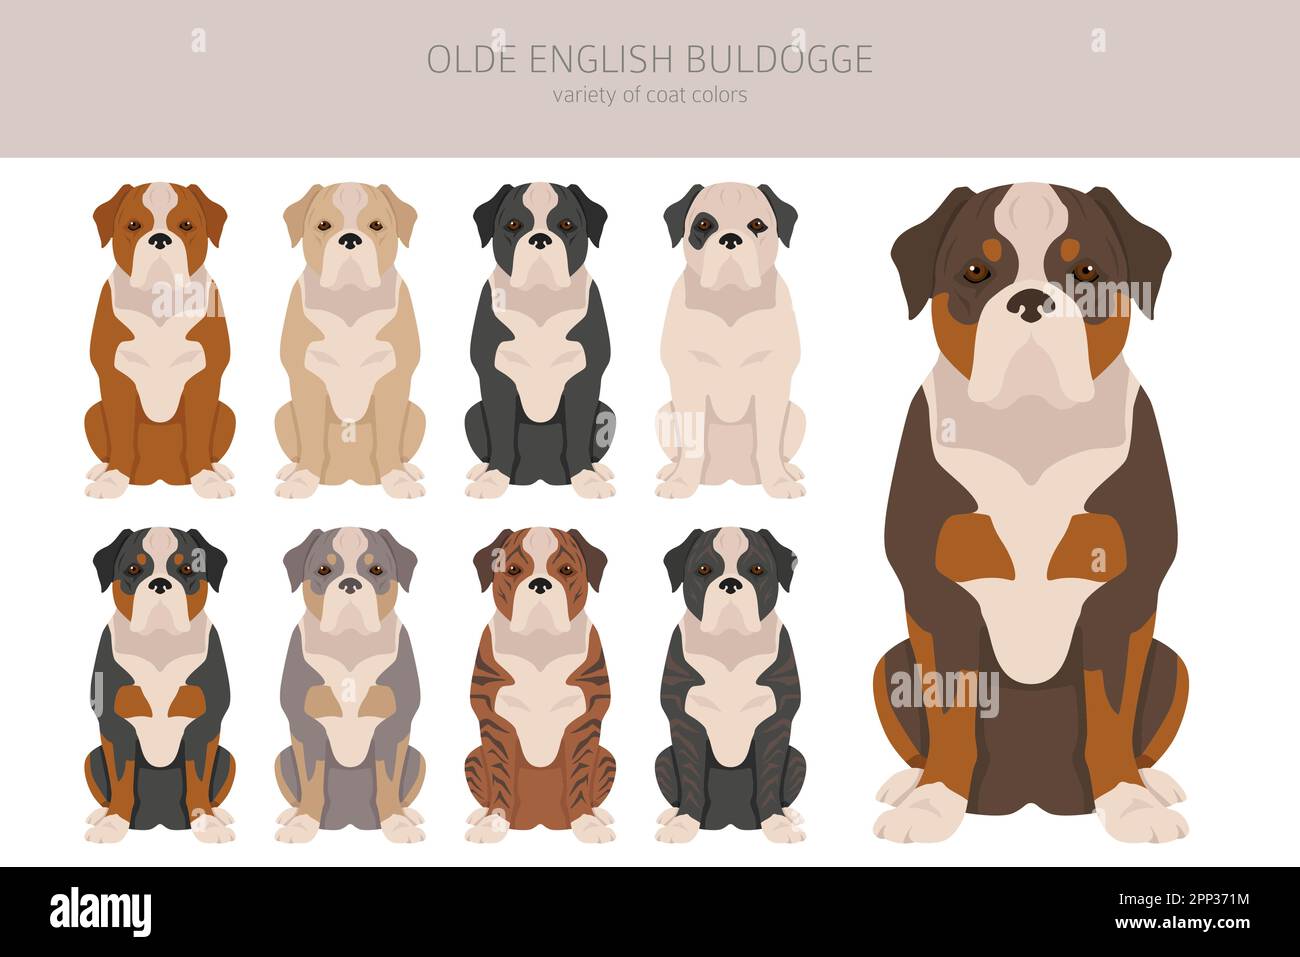 Olde inglese Bulldogge, Leavitt Bulldog Clipart. Pose diverse, colori del cappotto impostati. Illustrazione vettoriale Illustrazione Vettoriale